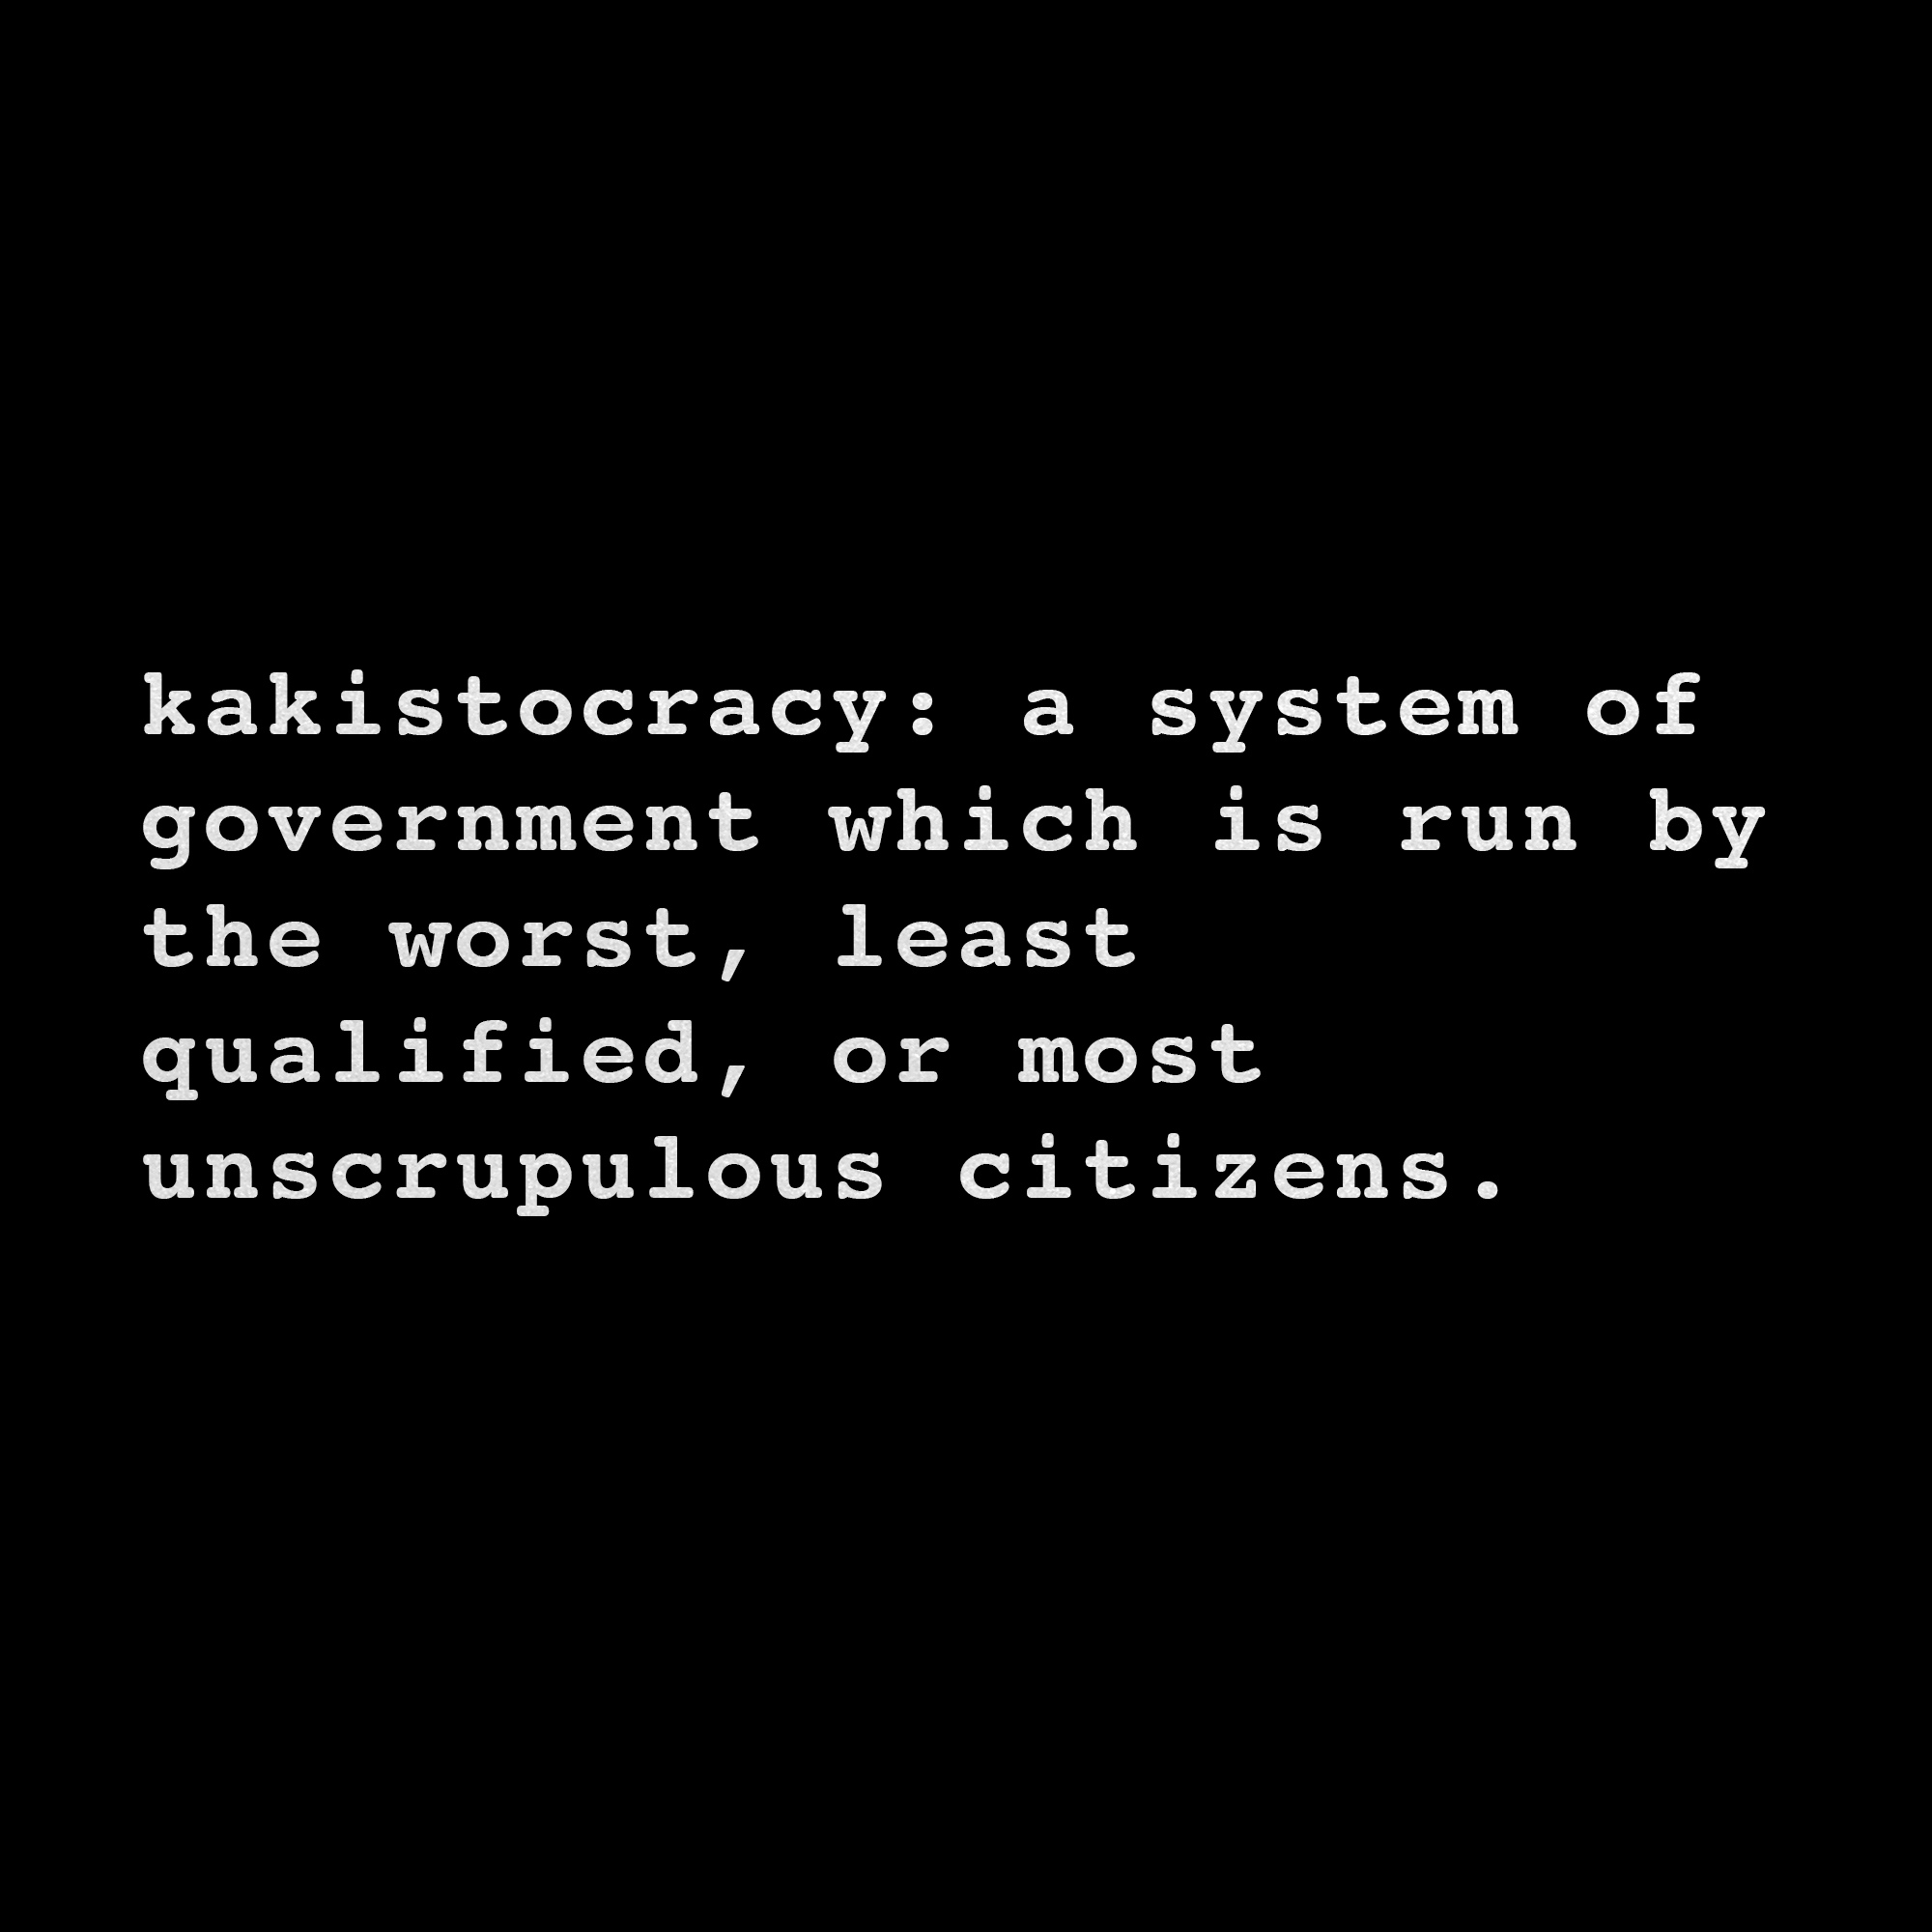 Kakistocracy